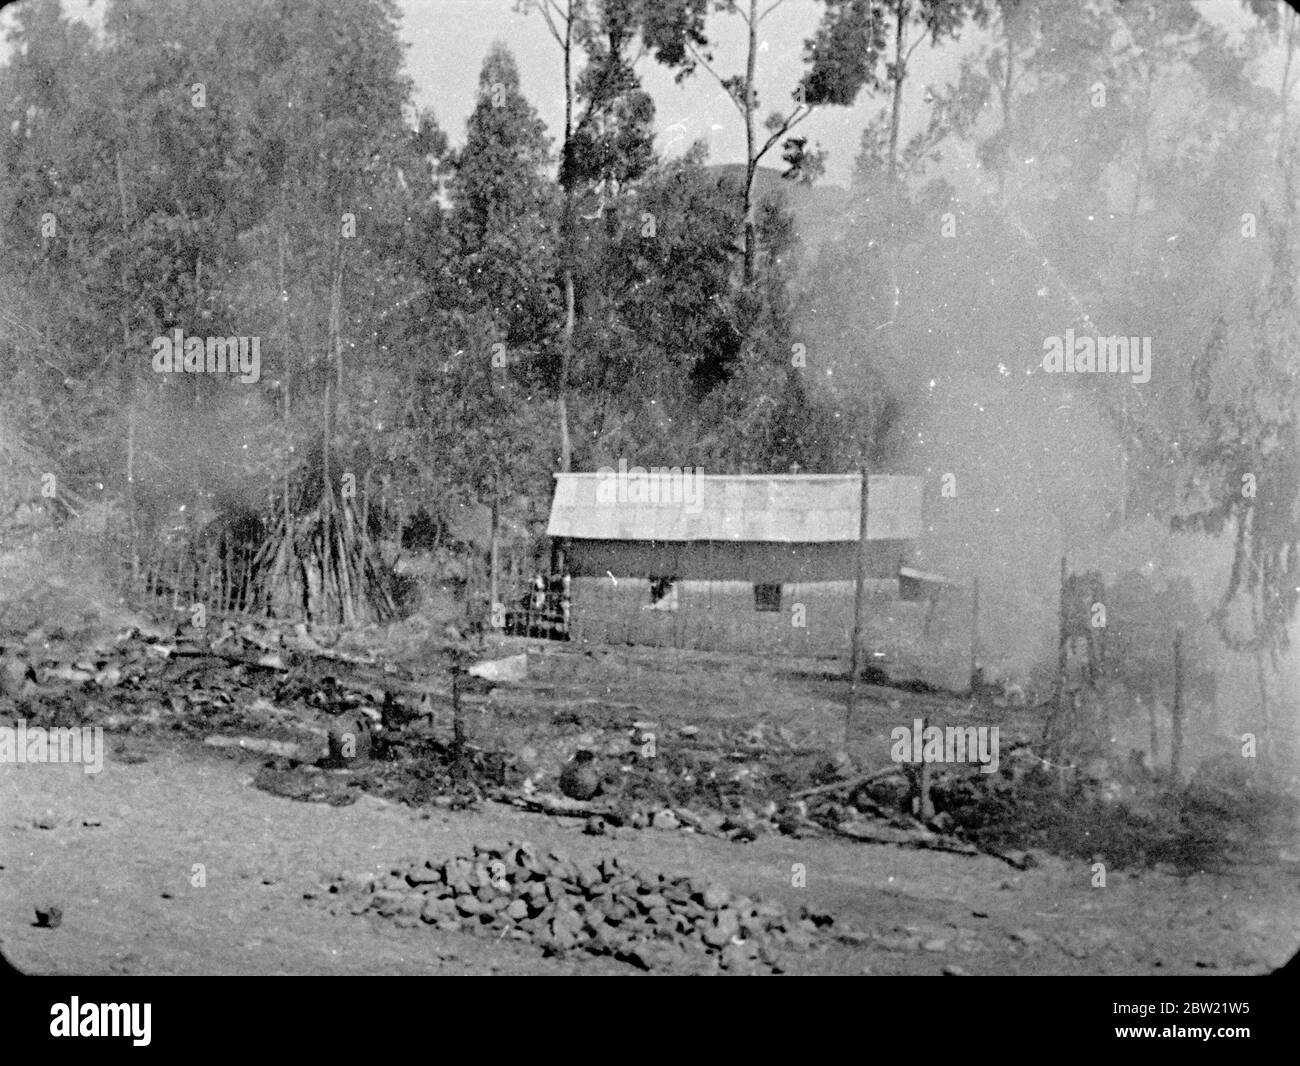 Italienischer Äthiopienkrieg, 1935 -1936 die Bombardierung des äthiopischen Dorfes Dessye durch italienische Flugzeuge. Gebäude in Brand geraten. Dezember 1935 Stockfoto